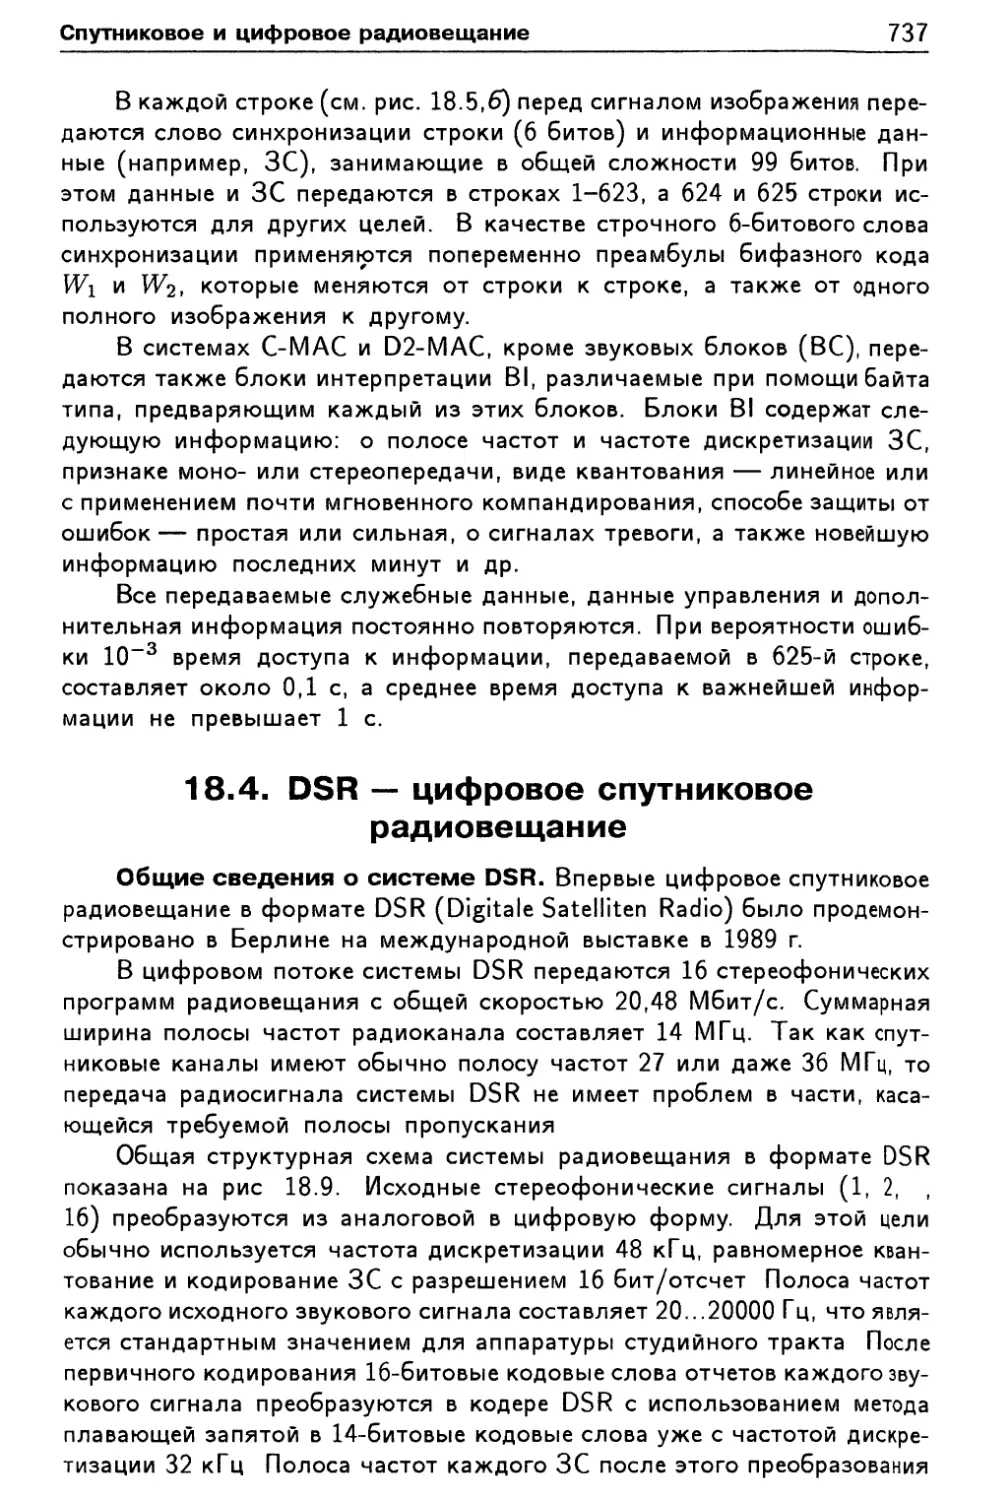 18.4. DSR — цифровое спутниковое радиовещание